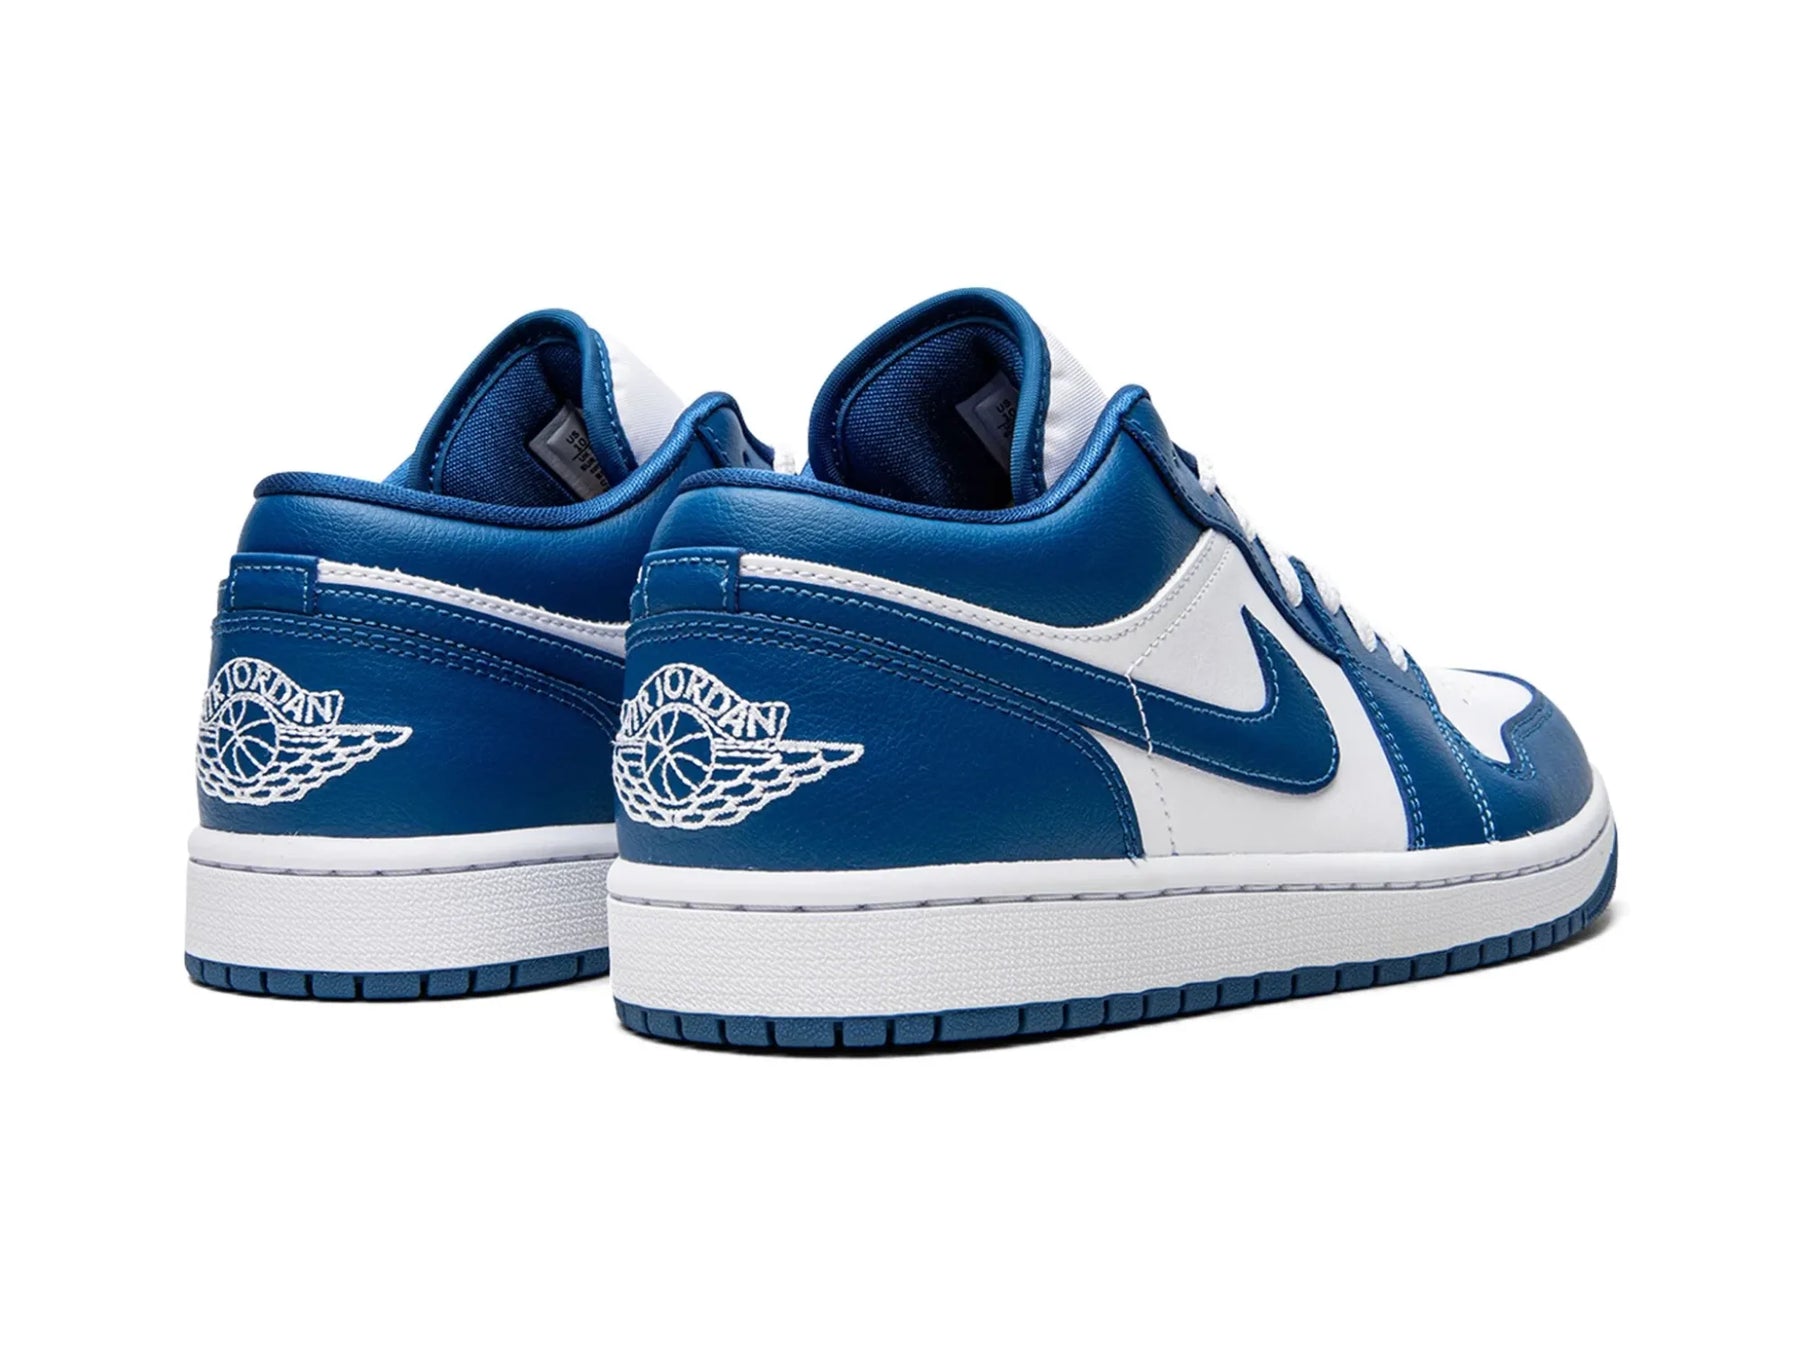 Nike Air Jordan 1 Low "Marina Blue" - street-bill.dk